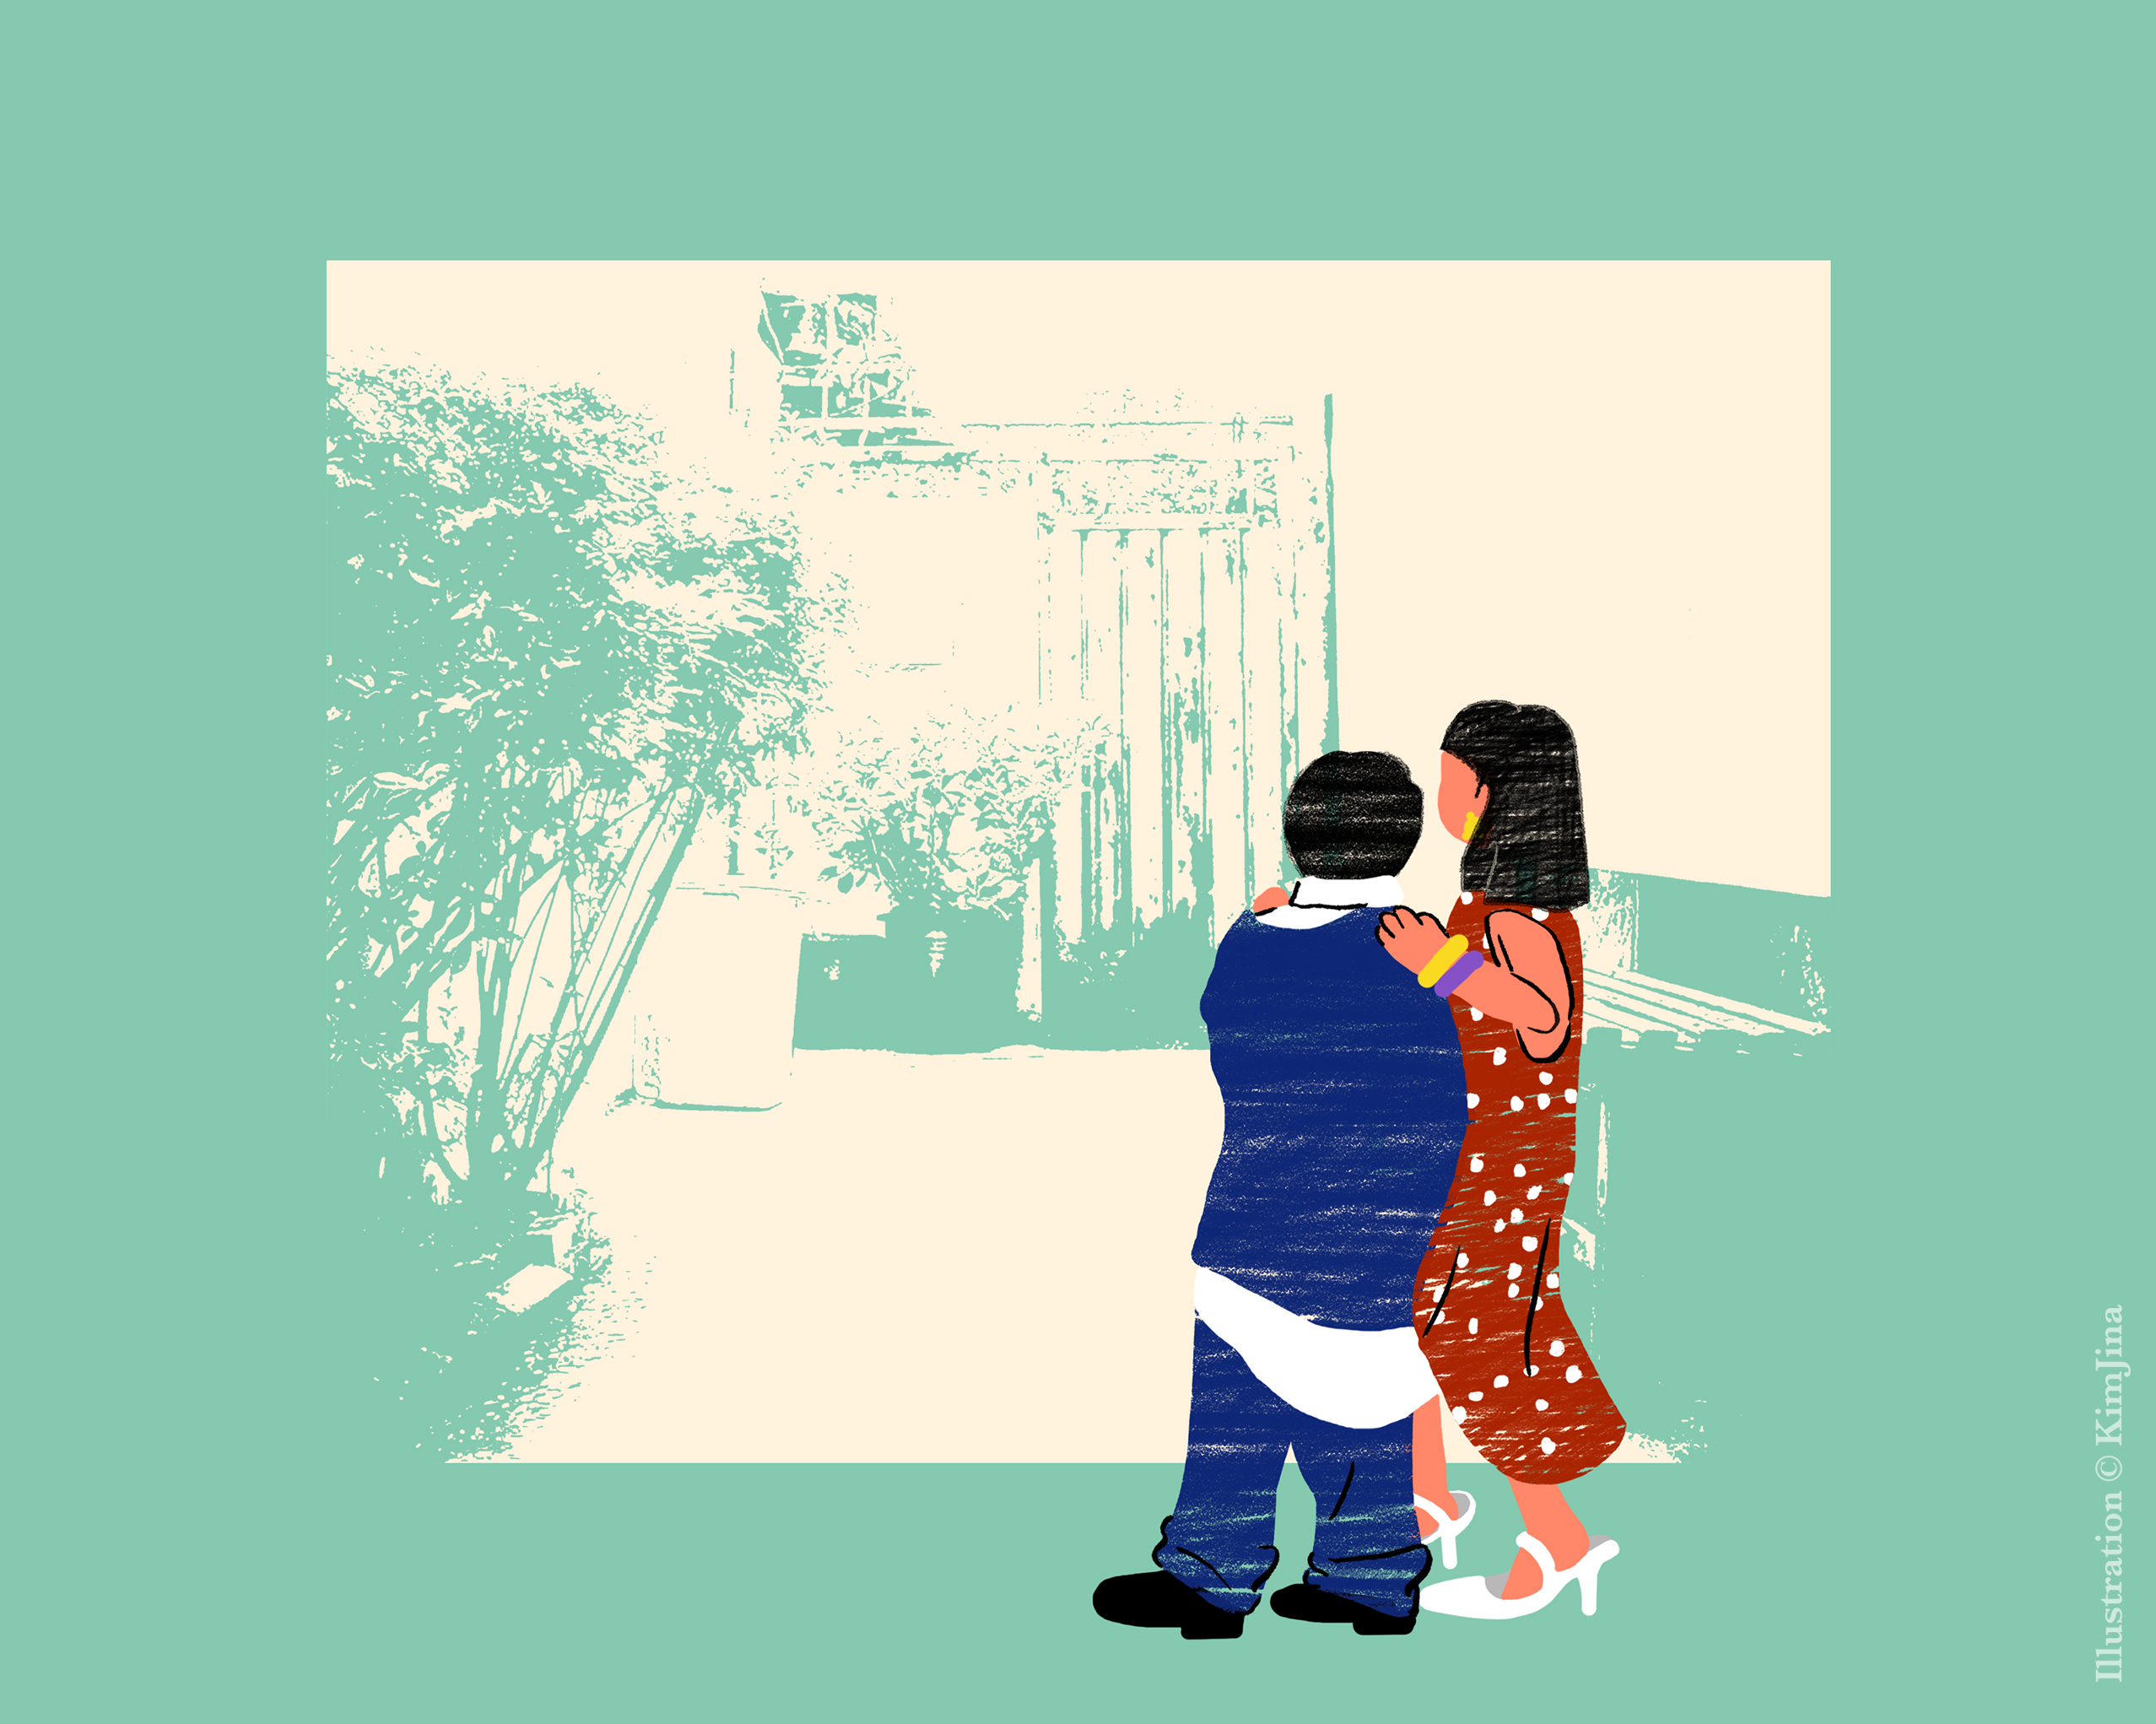 헐렁한 부모님의 옷을 입고 어른이 된 설레는 기분으로 골목길을 나서는 나와 동생.  illustration Kim Jina  